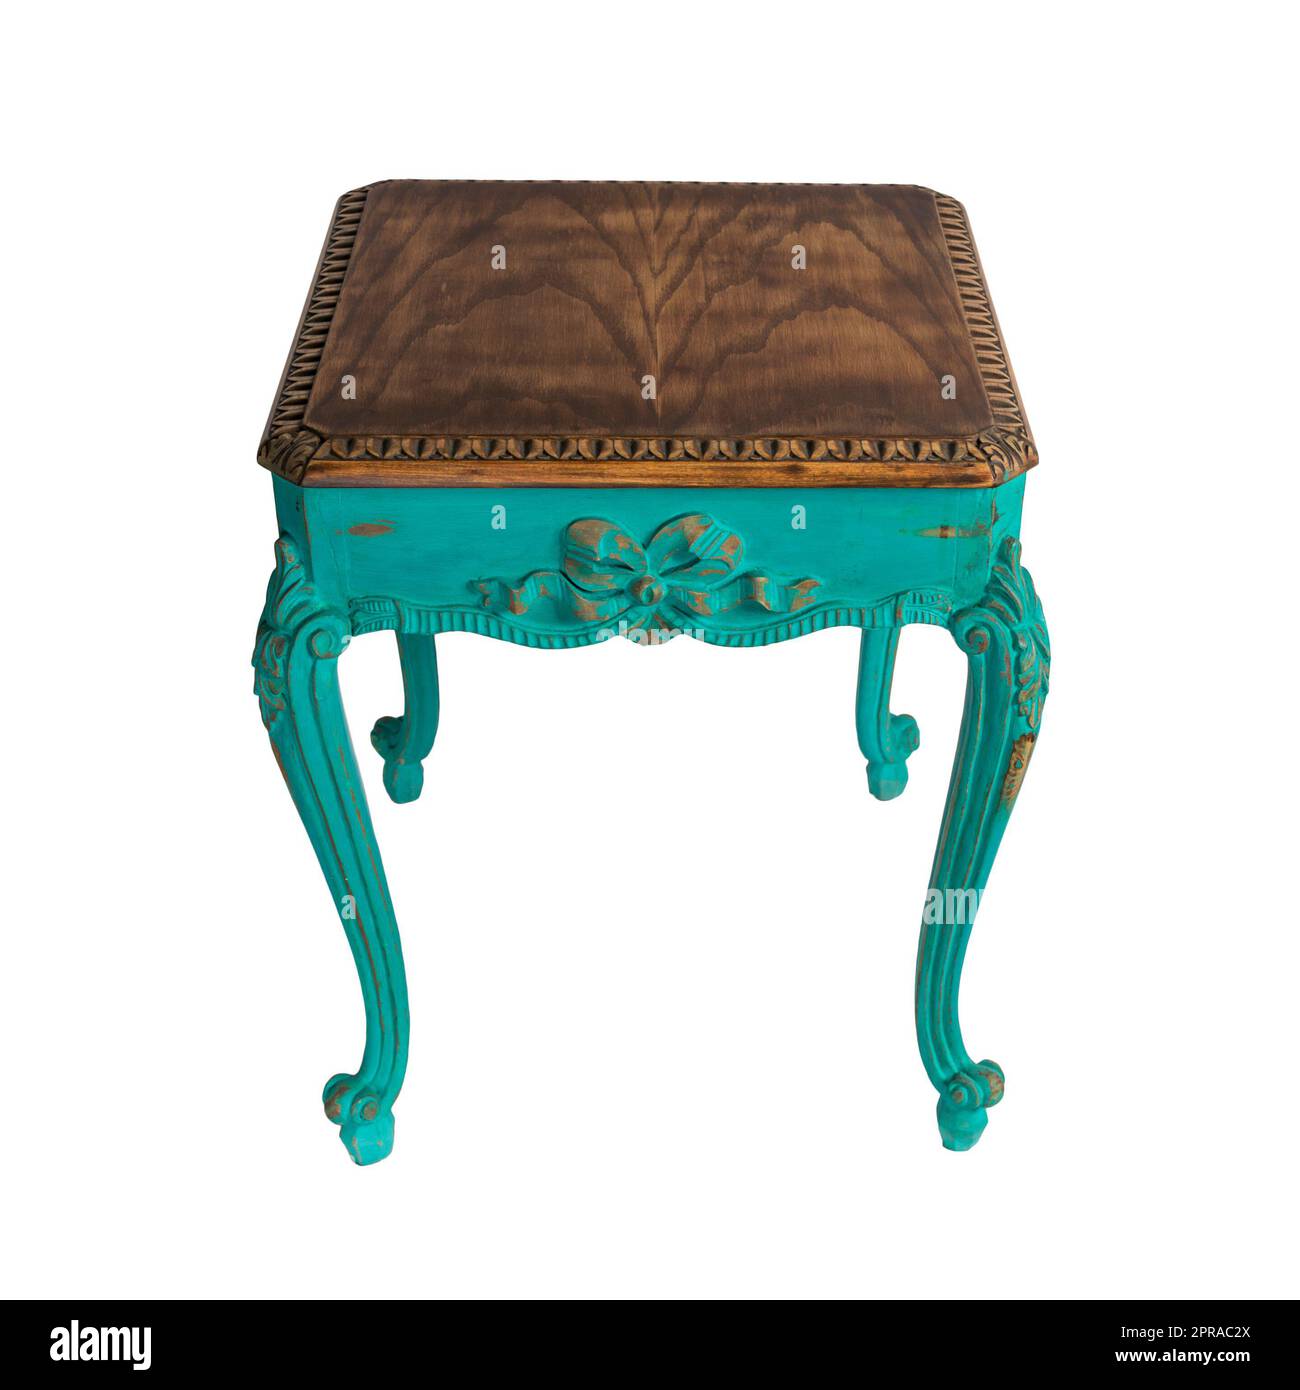 Meubles vintage - Table rétro en bois vintage avec pattes peintes vertes isolées avec passe-cheveux Banque D'Images